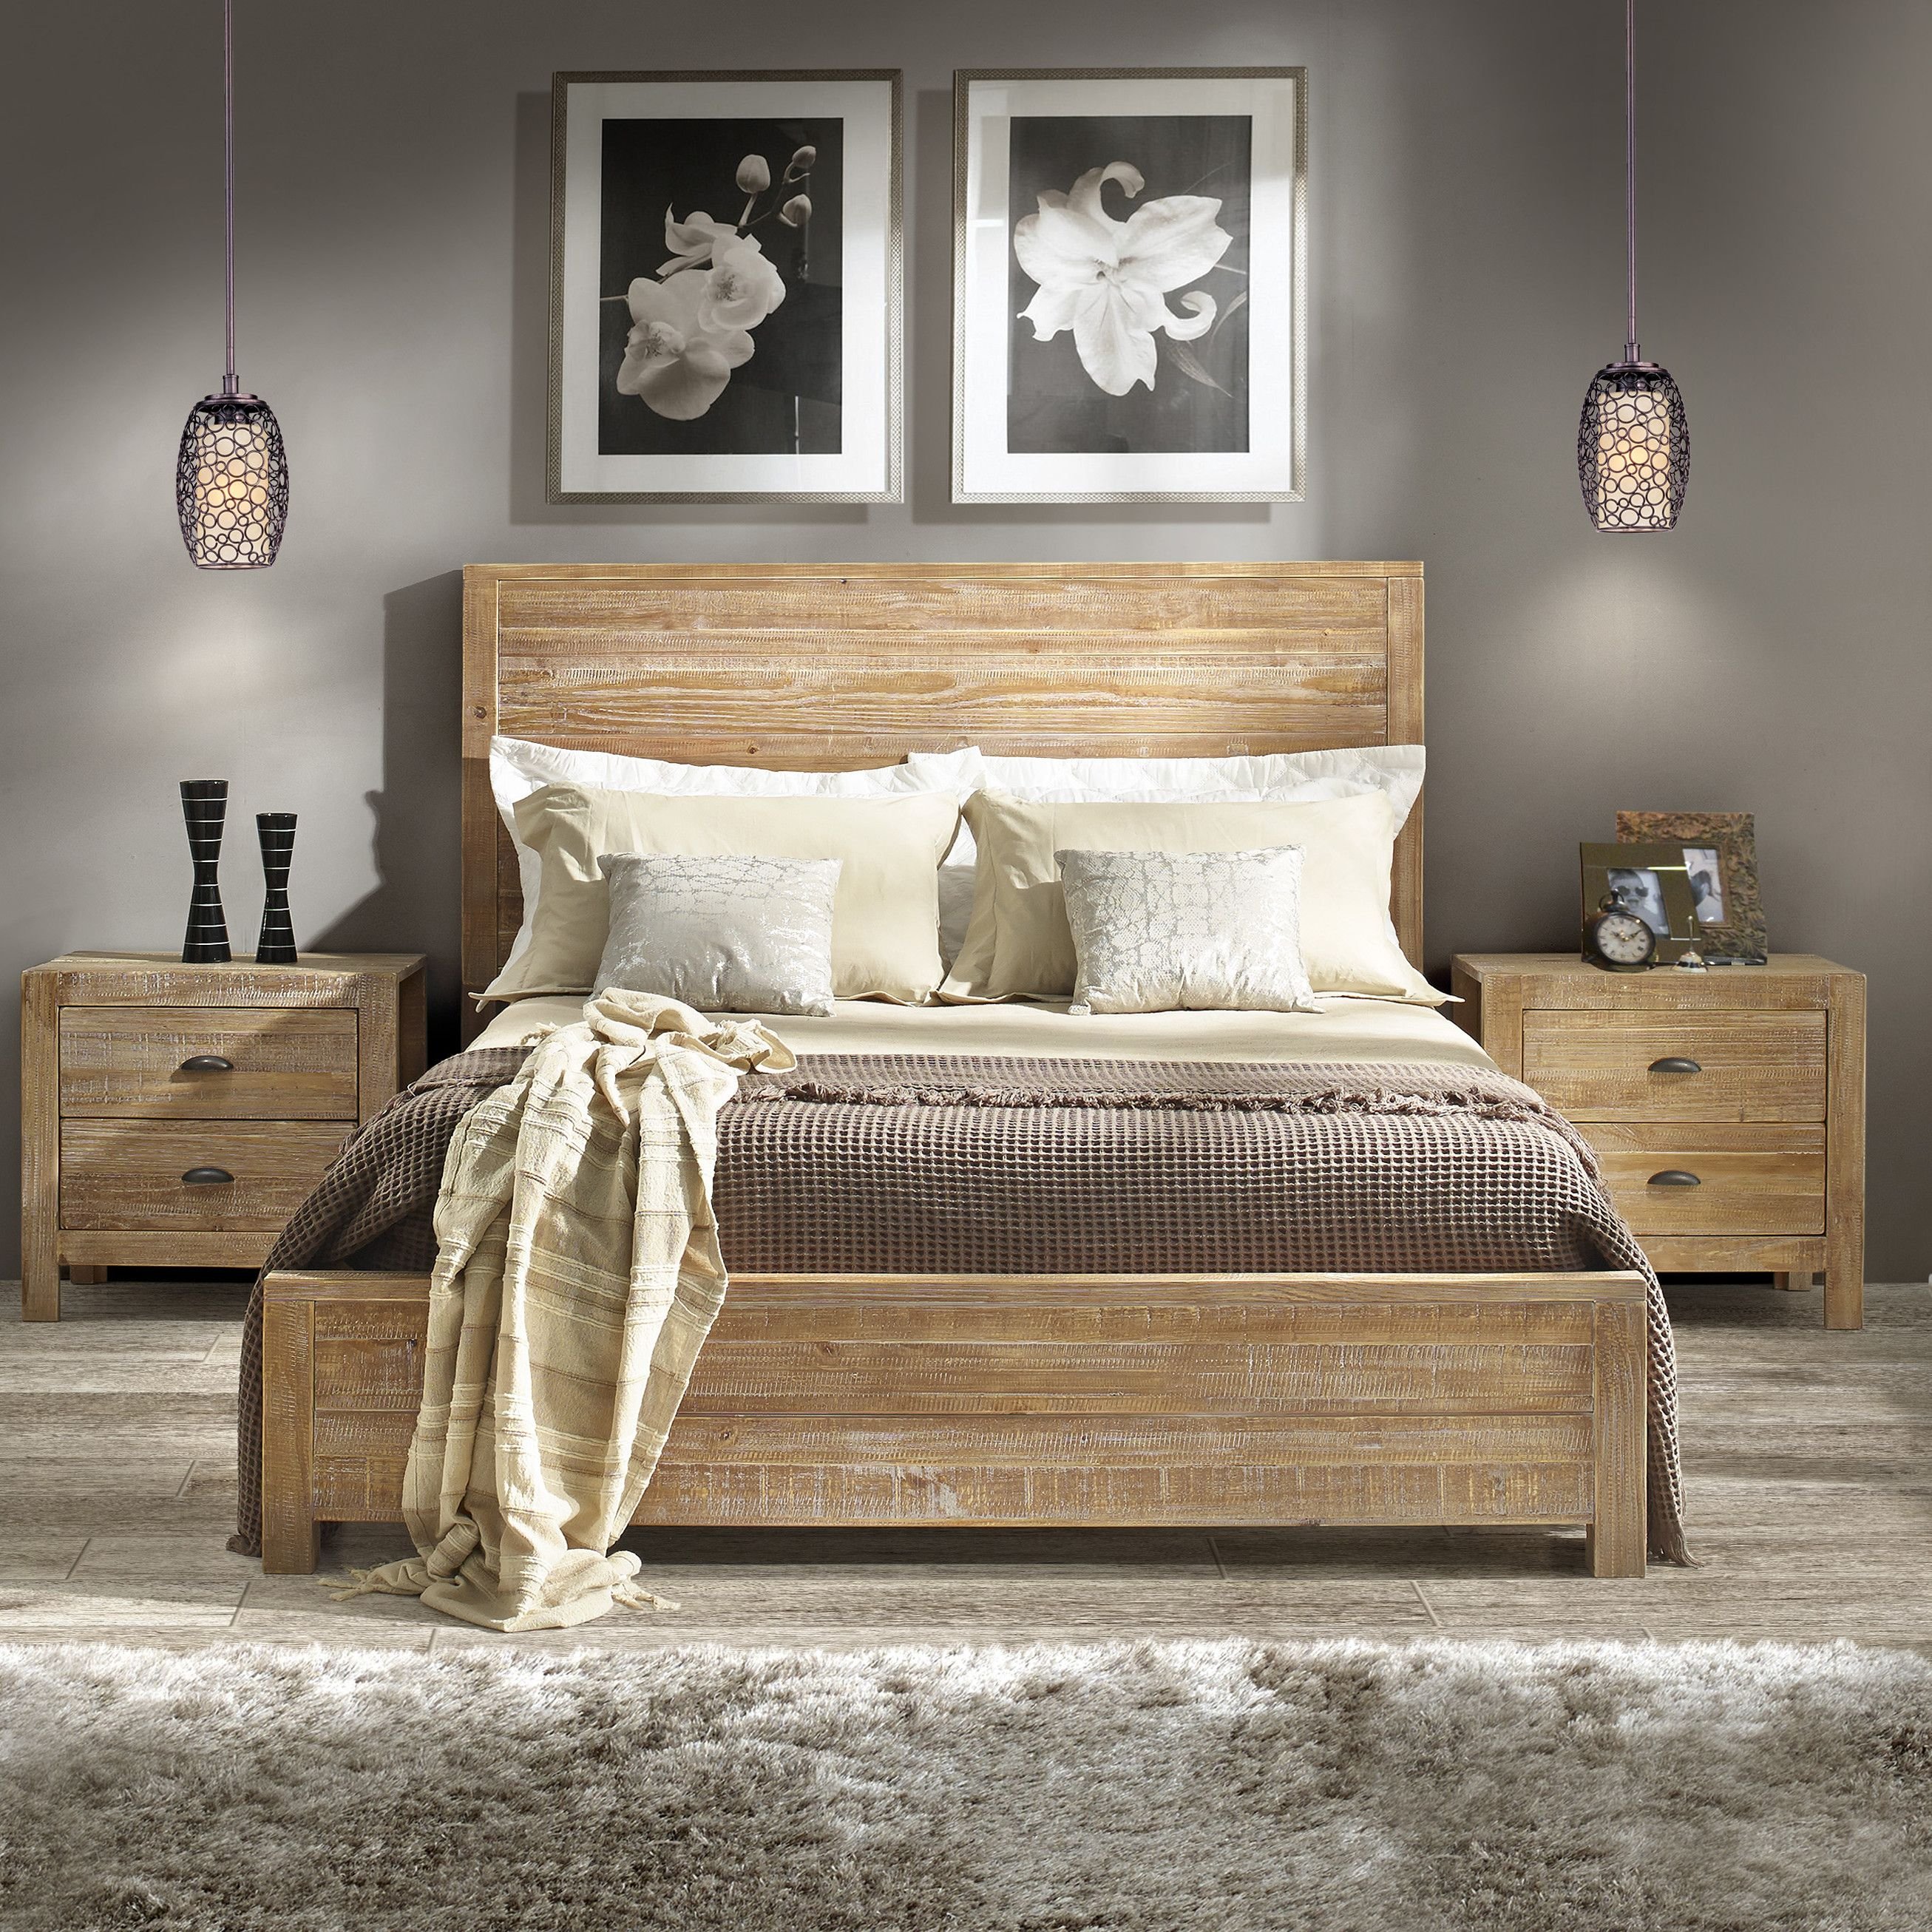 деревянная кровать в интерьере спальни